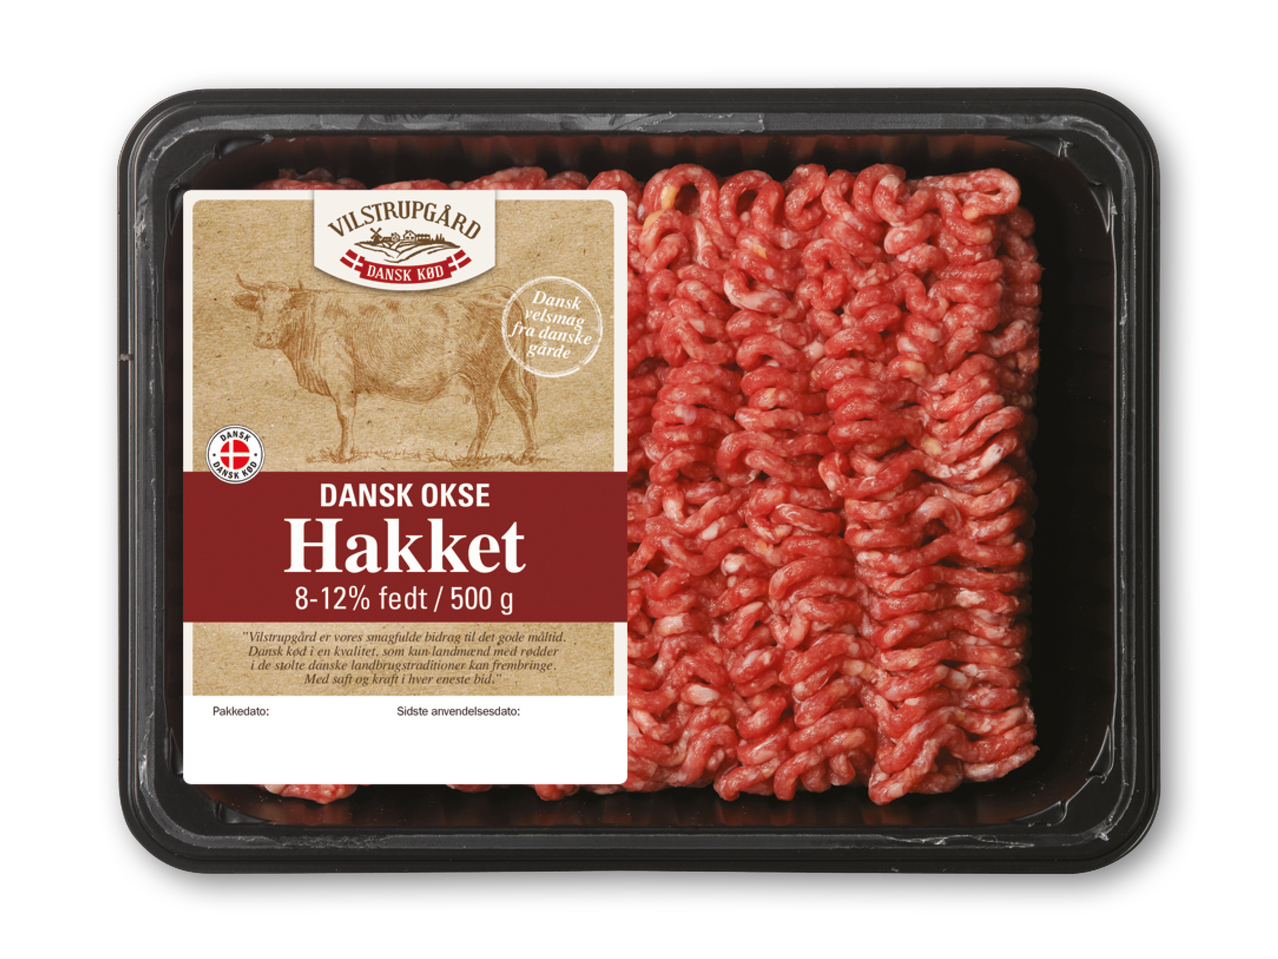 VILSTRUPGÅRD Hakket dansk oksekød